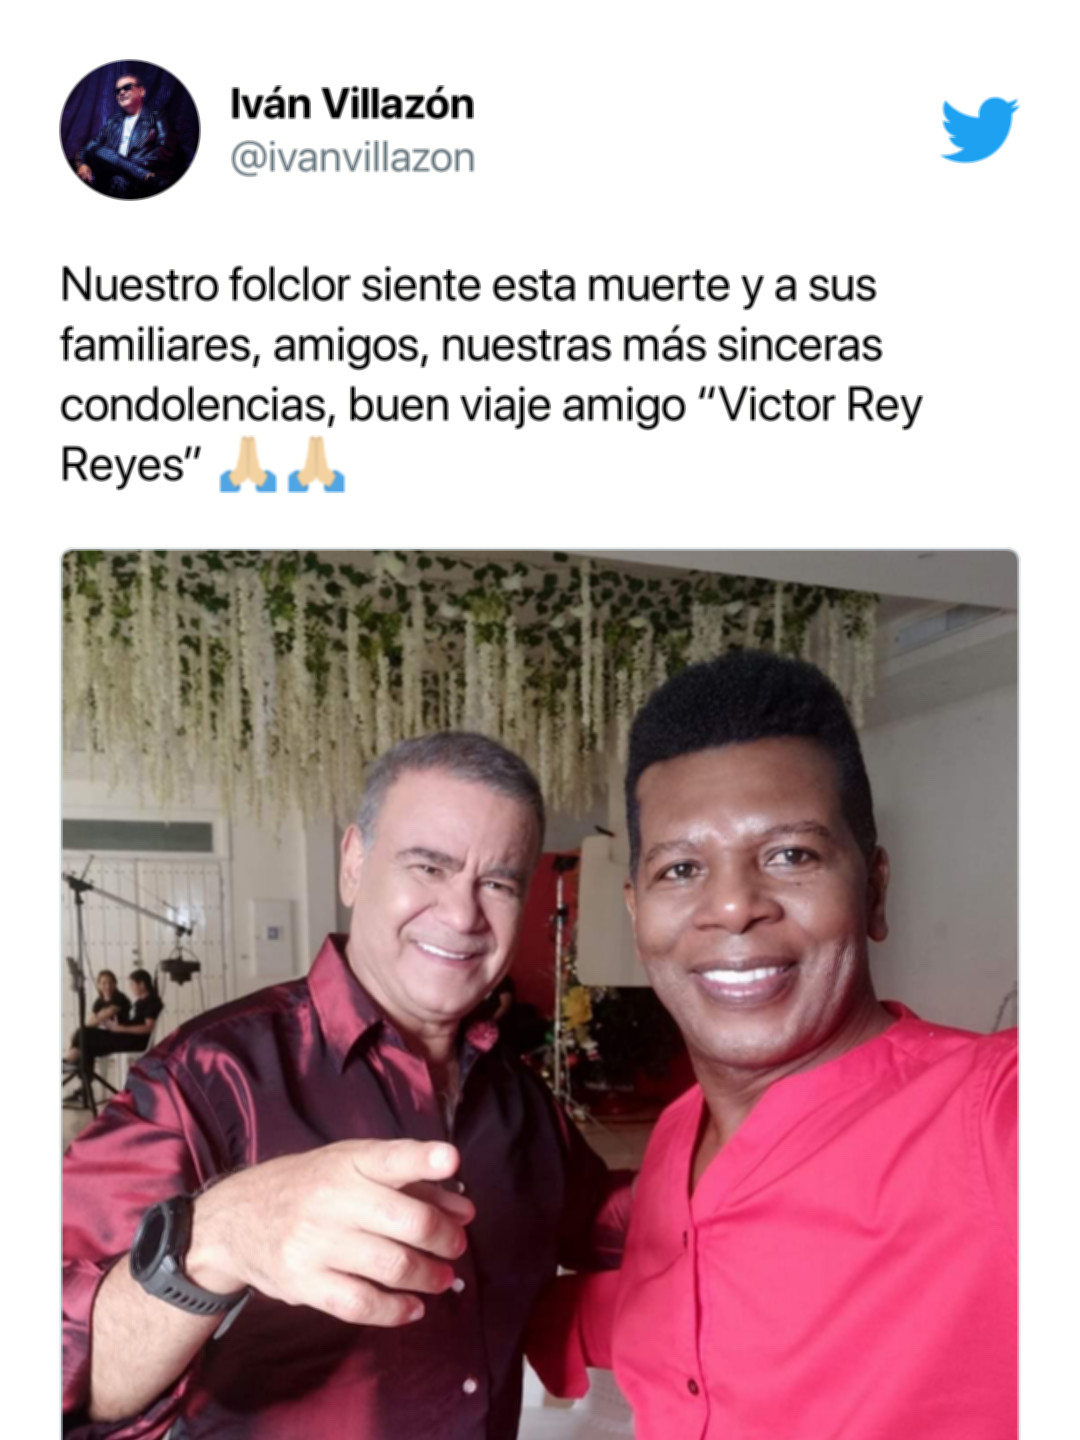 Iván Villazón y su fallecimiento por la muerte de Víctor Rey Reyes